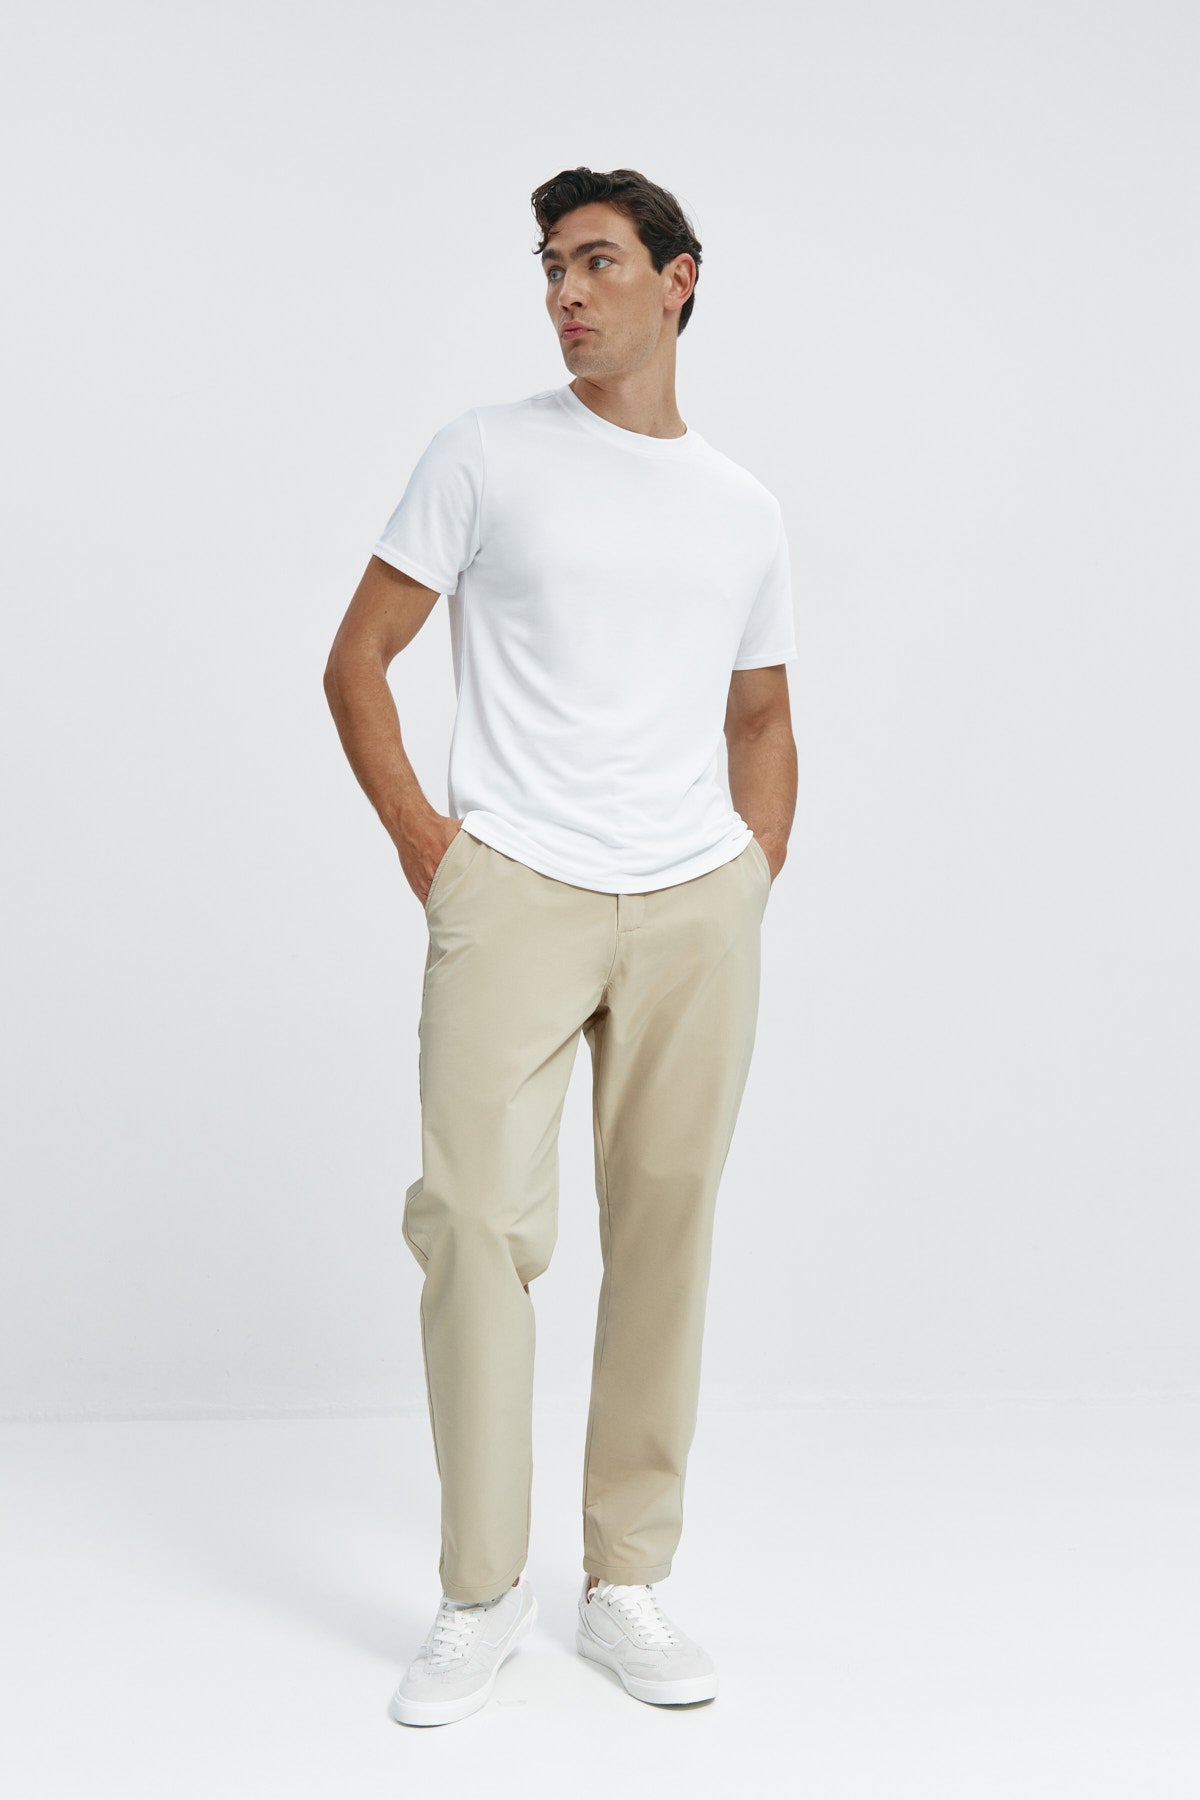 Pantalón chino regular beige para hombre con tecnología termorreguladora Coolmax. Foto cuerpo entero